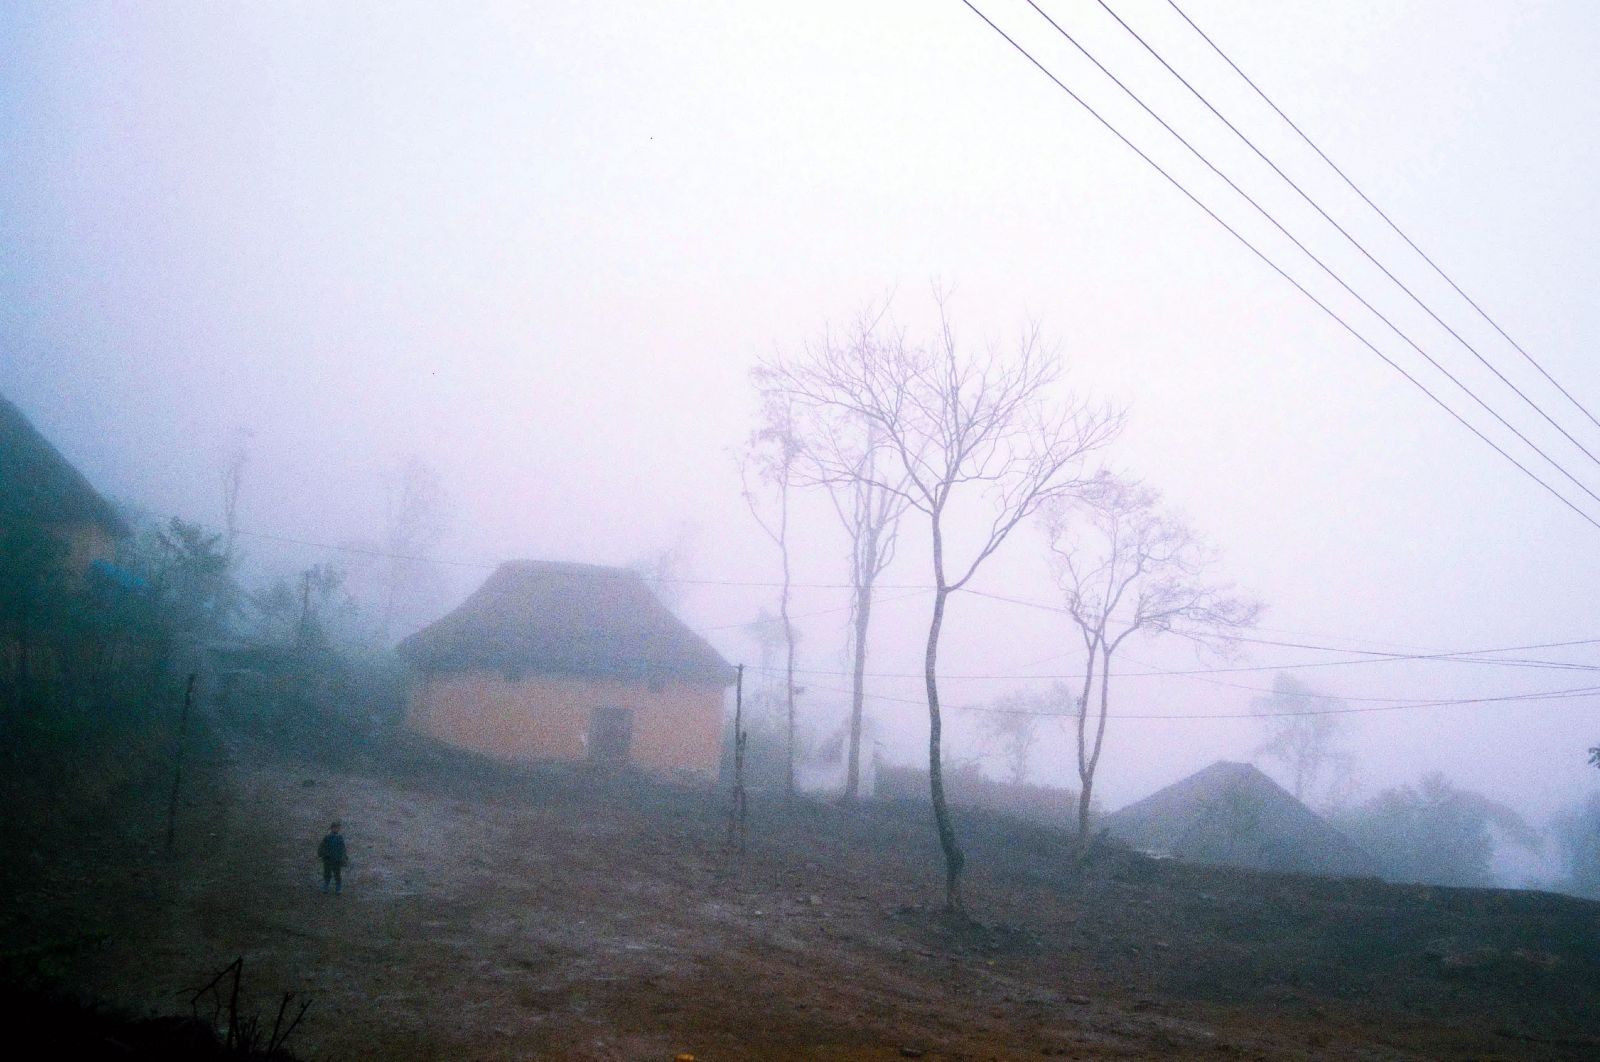 Một góc của thôn Chỏn Thèn lúc 17h45 chiều, khi sương mù bao phủ dày đặt khiến những thân cây ẩn hiện trong bảng lảng khói sương, vẽ nên vẻ trầm mặc của vùng đất…